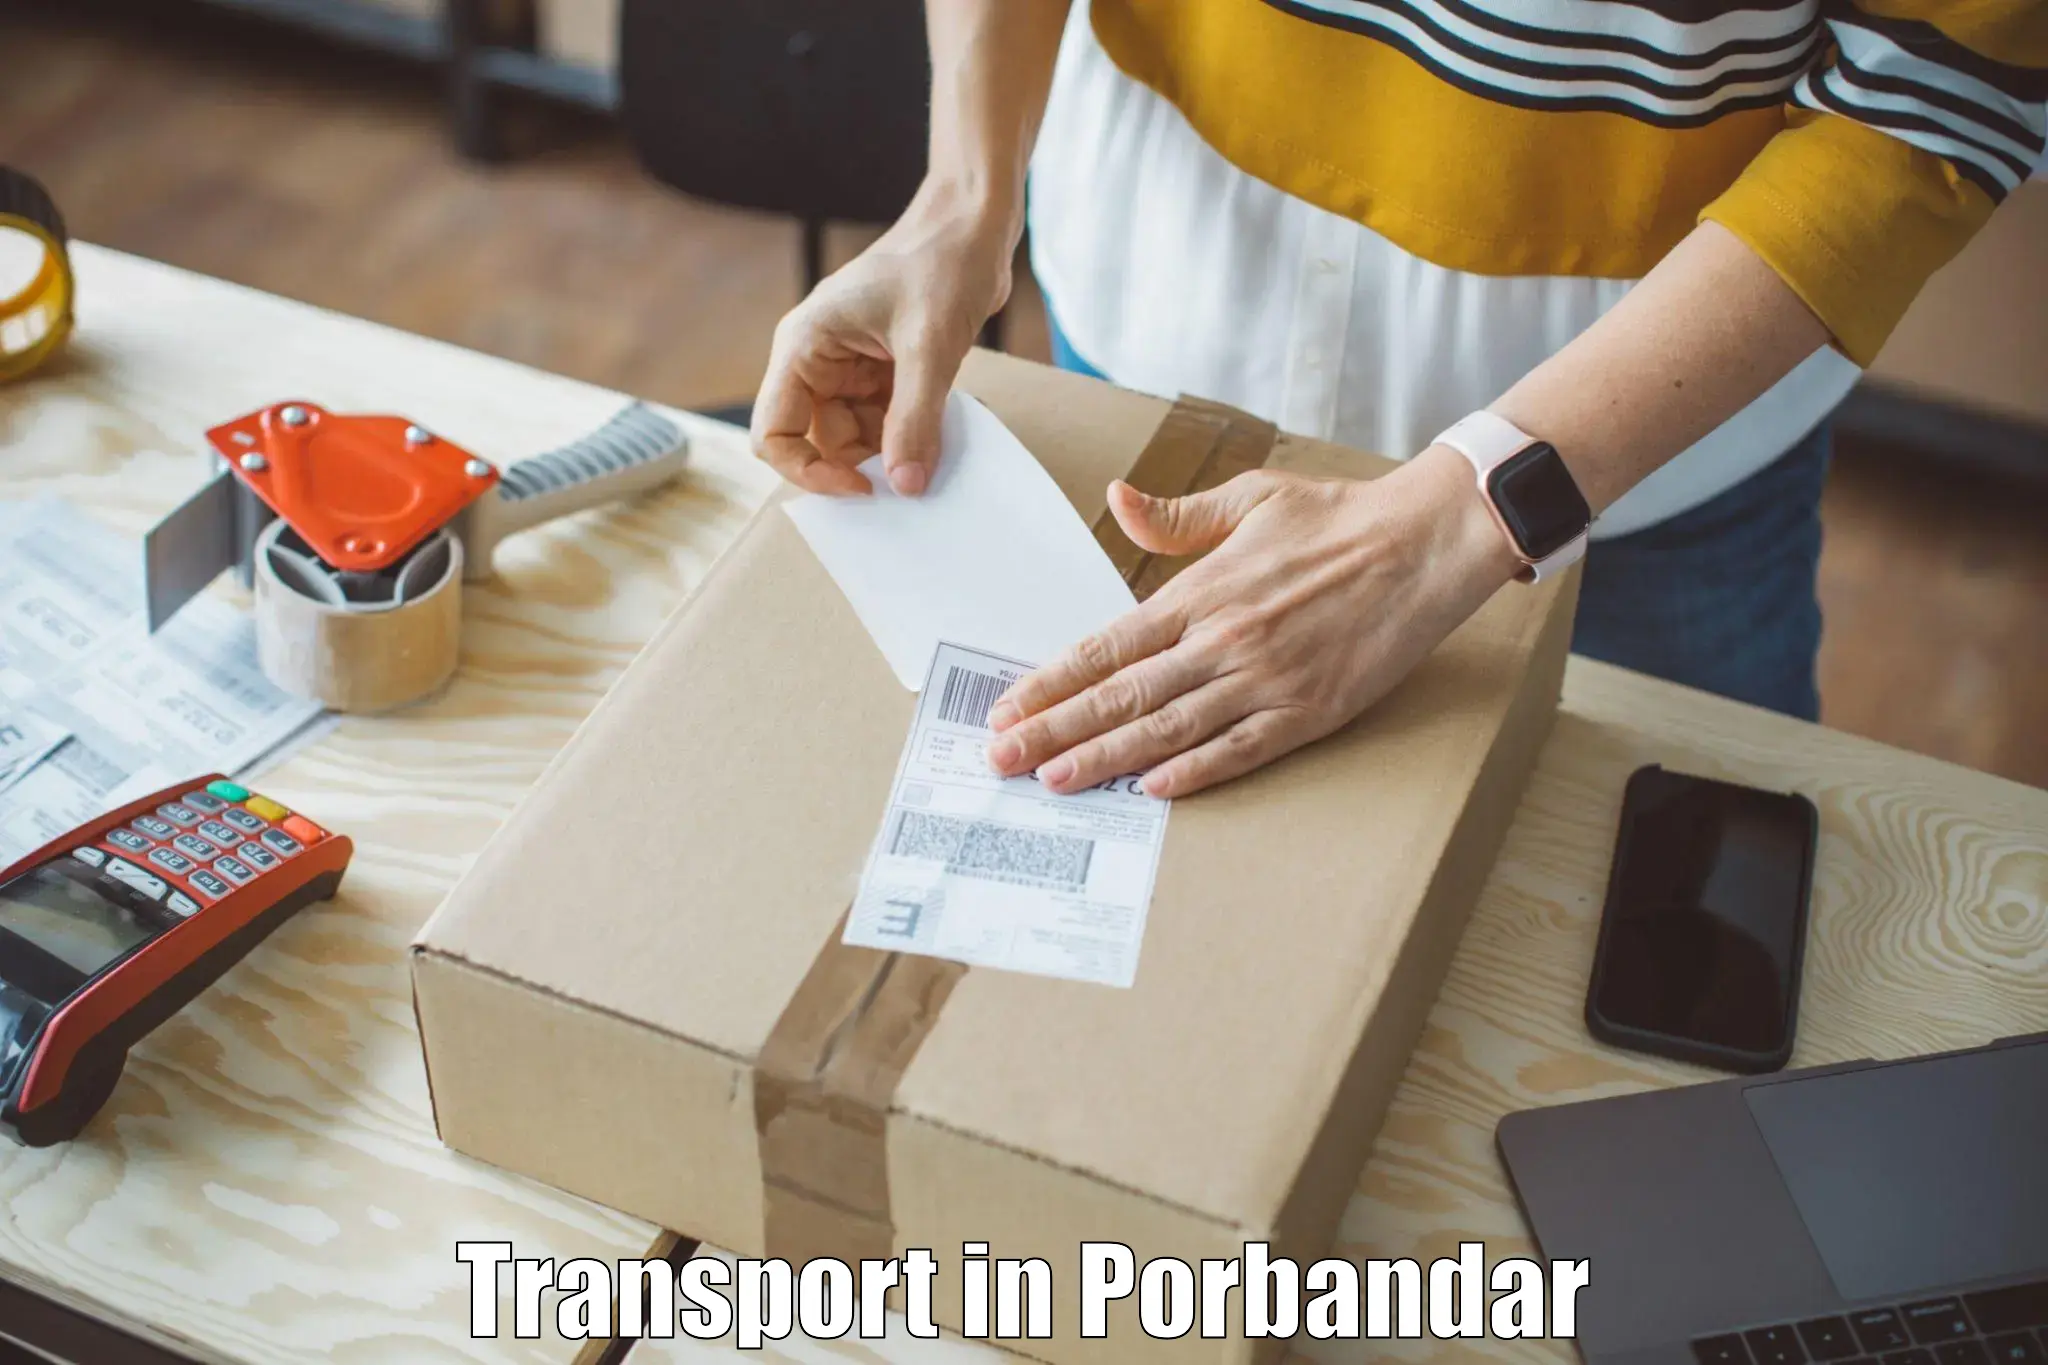 Intercity goods transport in Porbandar